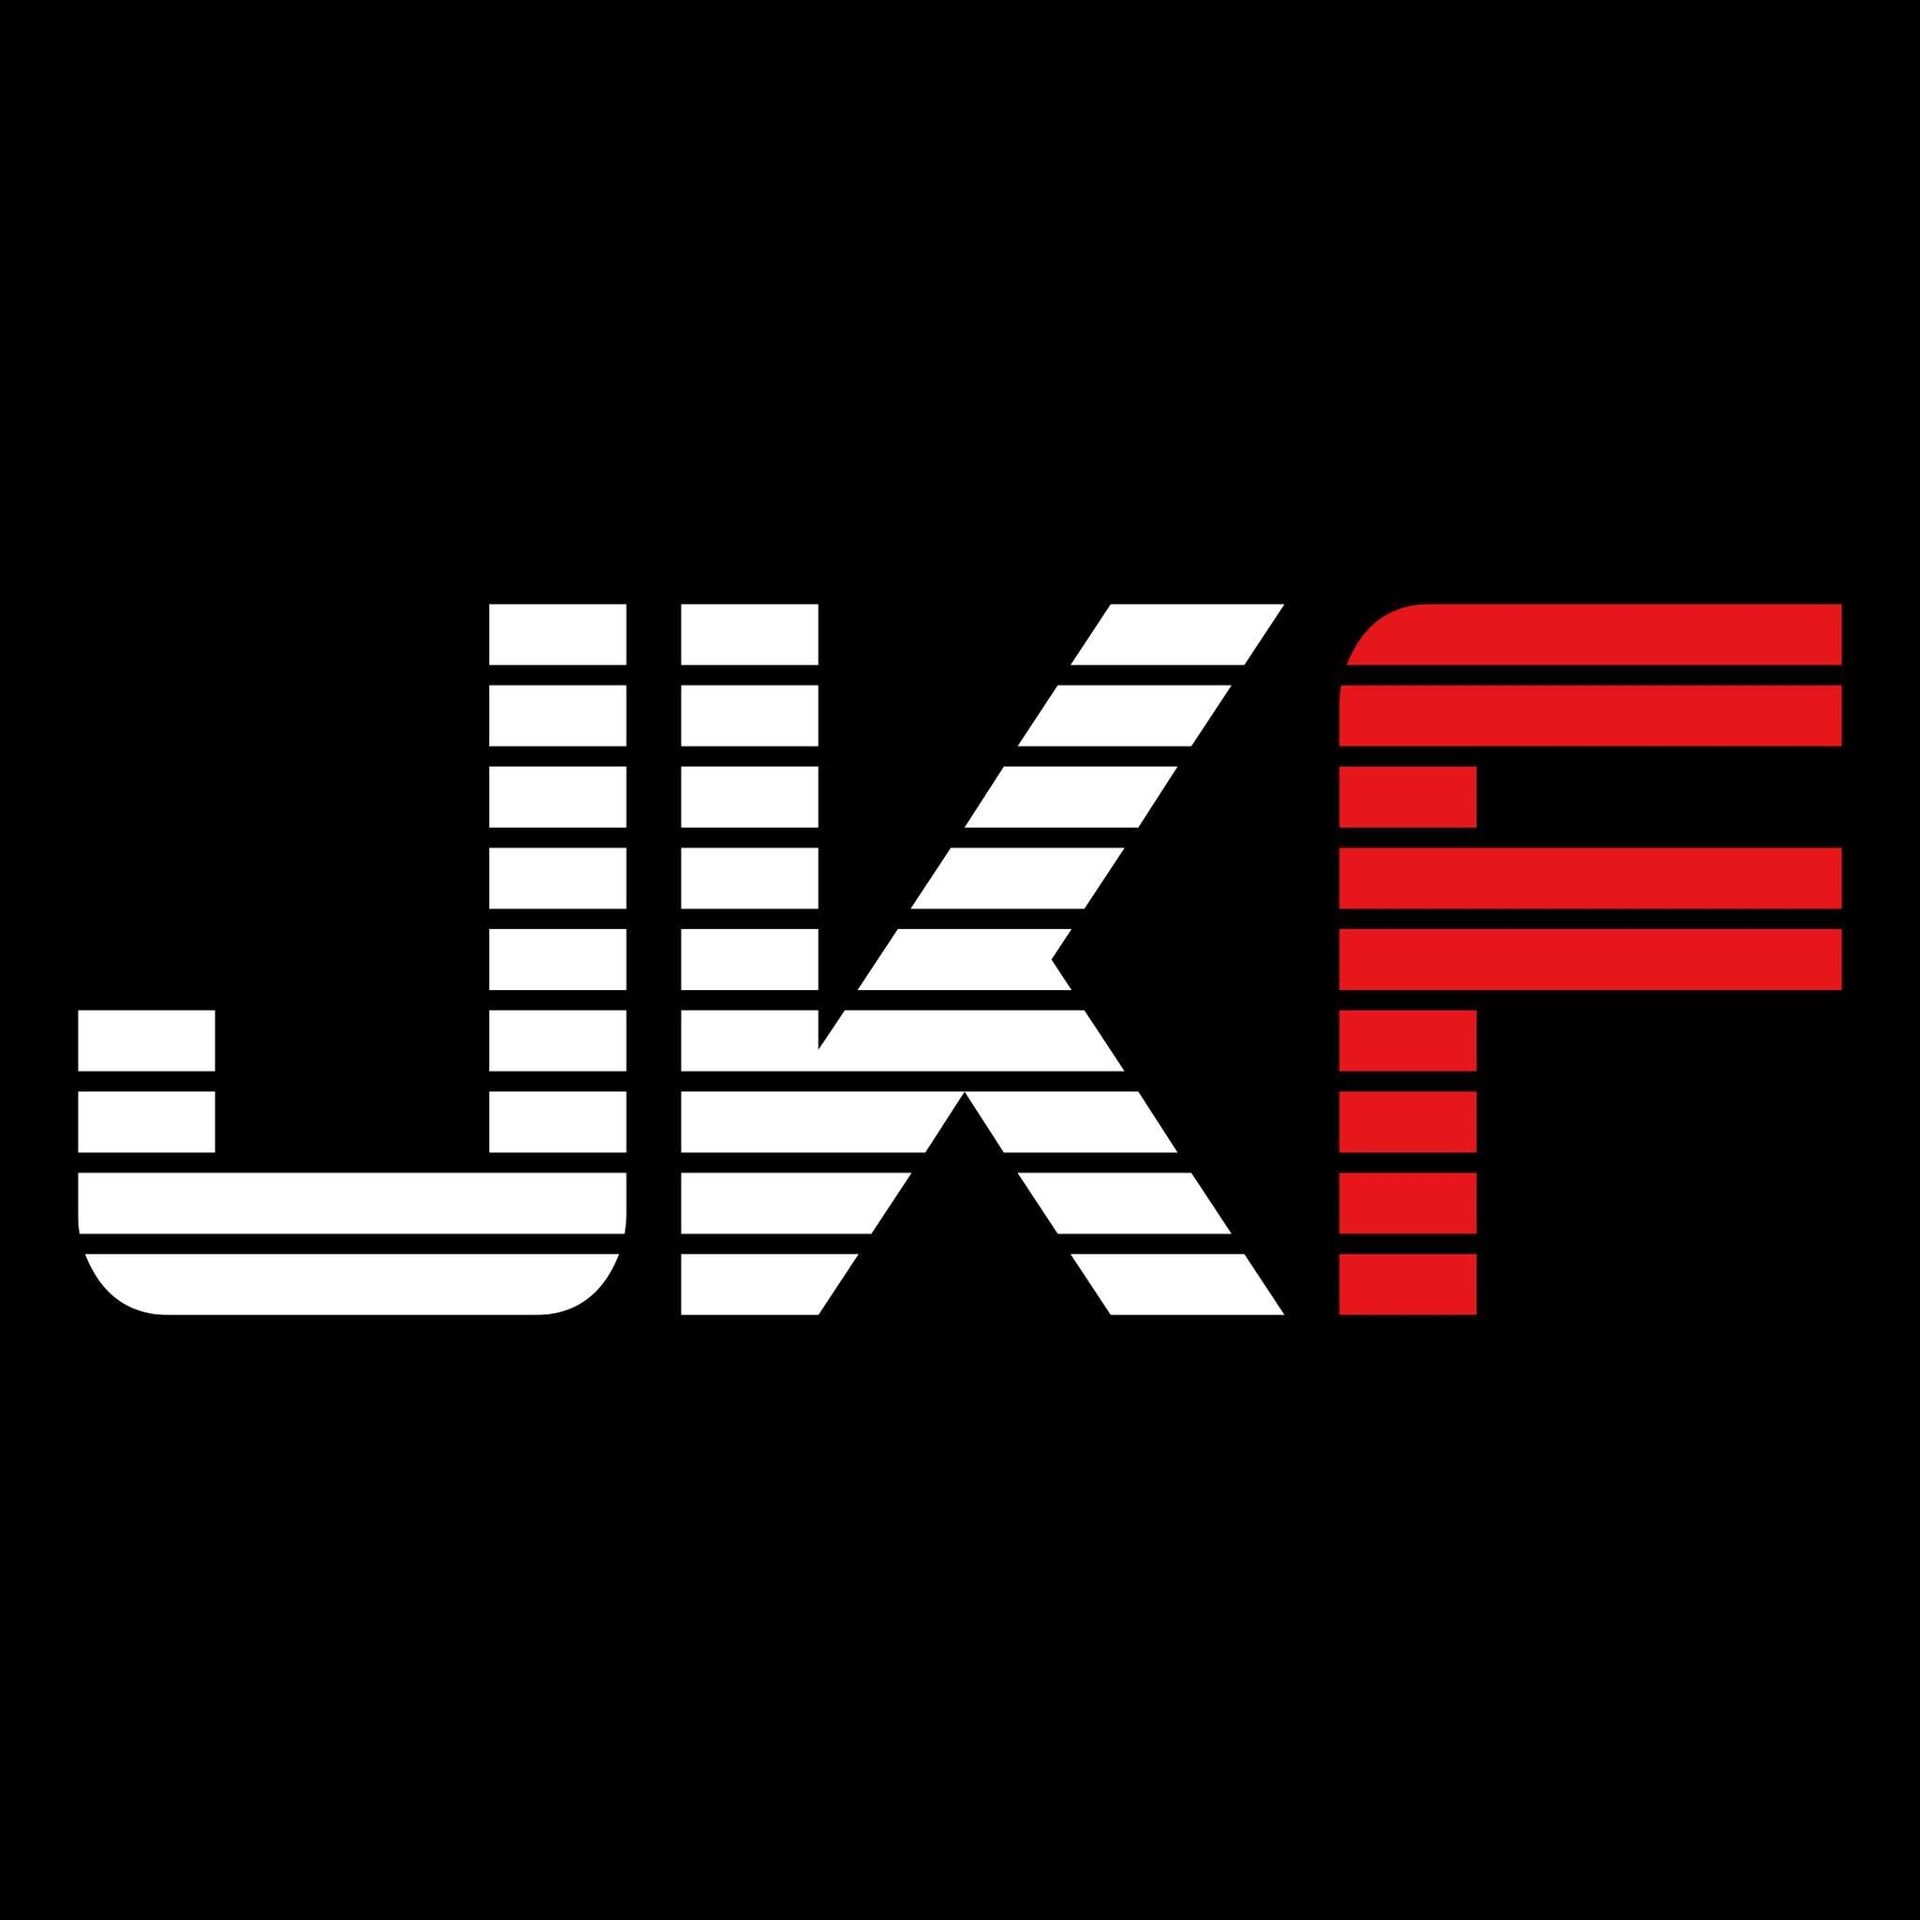 2017 JKF 3x3街頭籃球派對 的活動 Logo